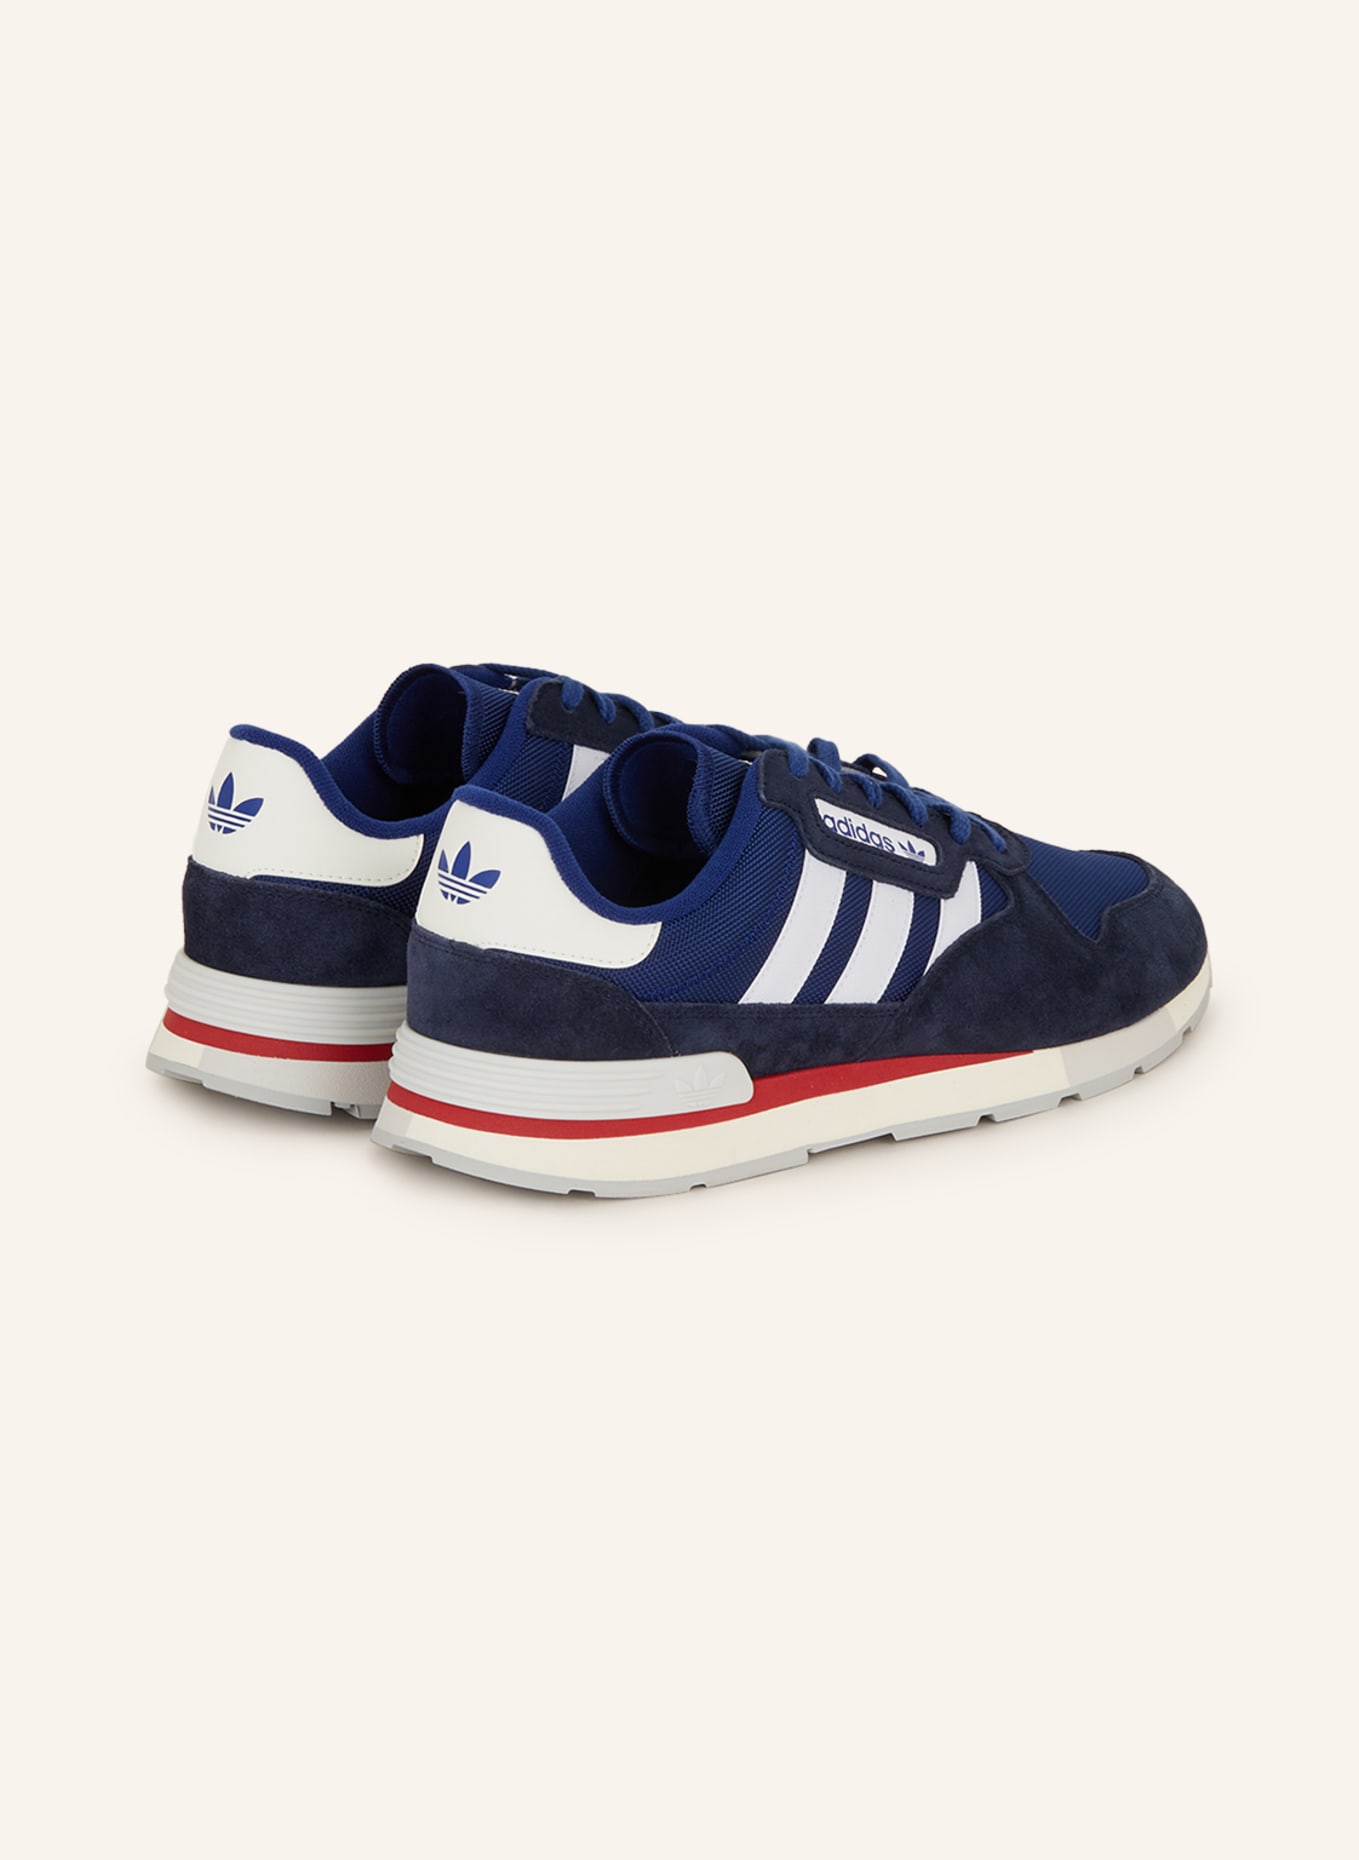 adidas Originals Sneakers TREZIOD 2 in blue/ white/ dark blue